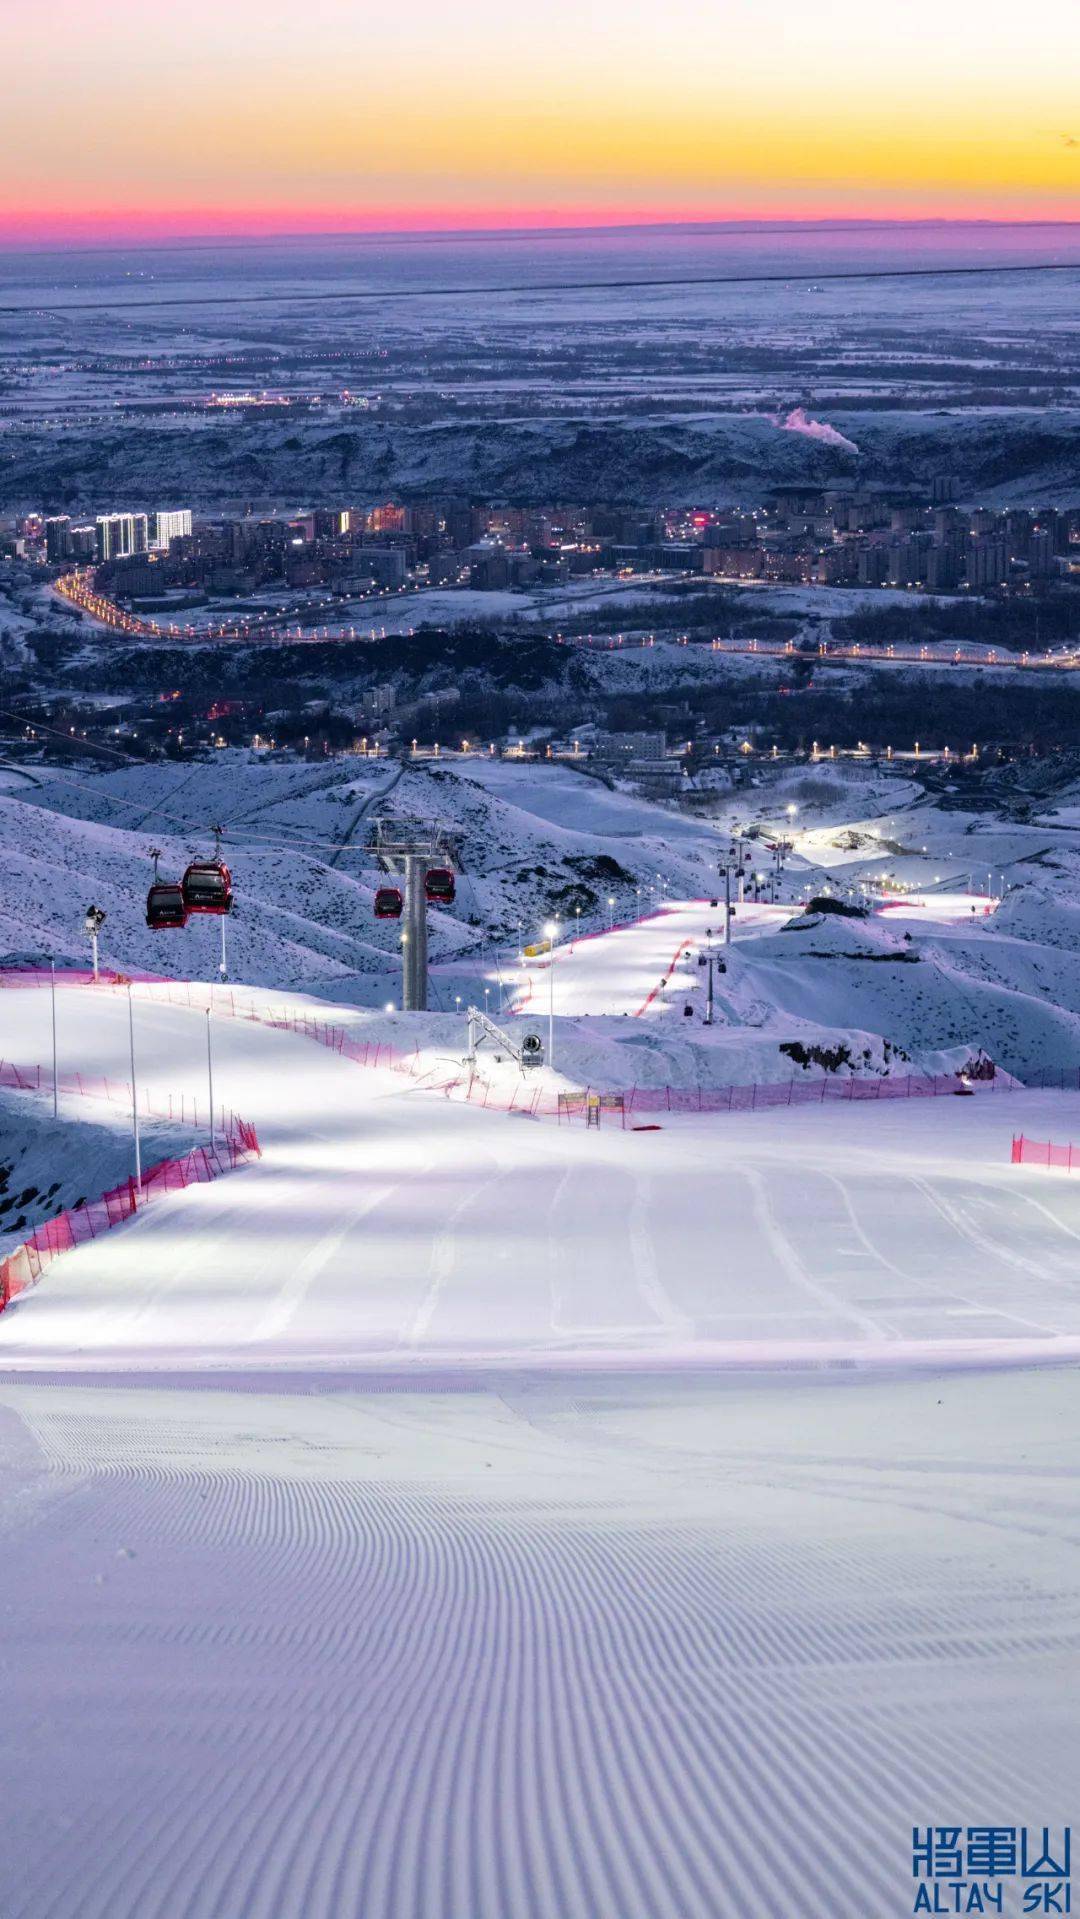 抖音用户打卡最多的滑雪场排行出炉!阿勒泰市将军山滑雪场位列第三!